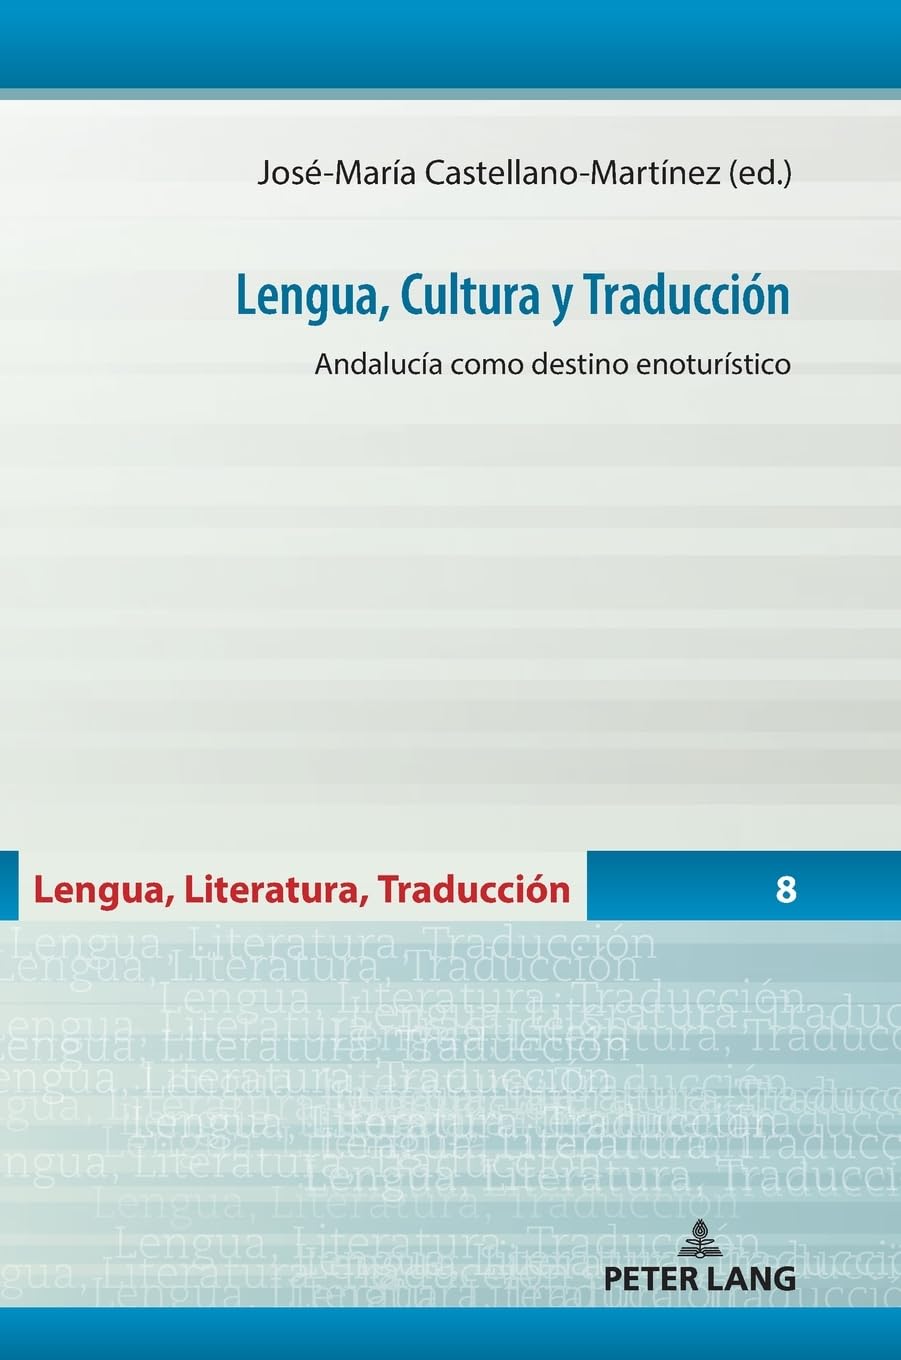 Imagen de portada del libro Lengua, Cultura y Traducción